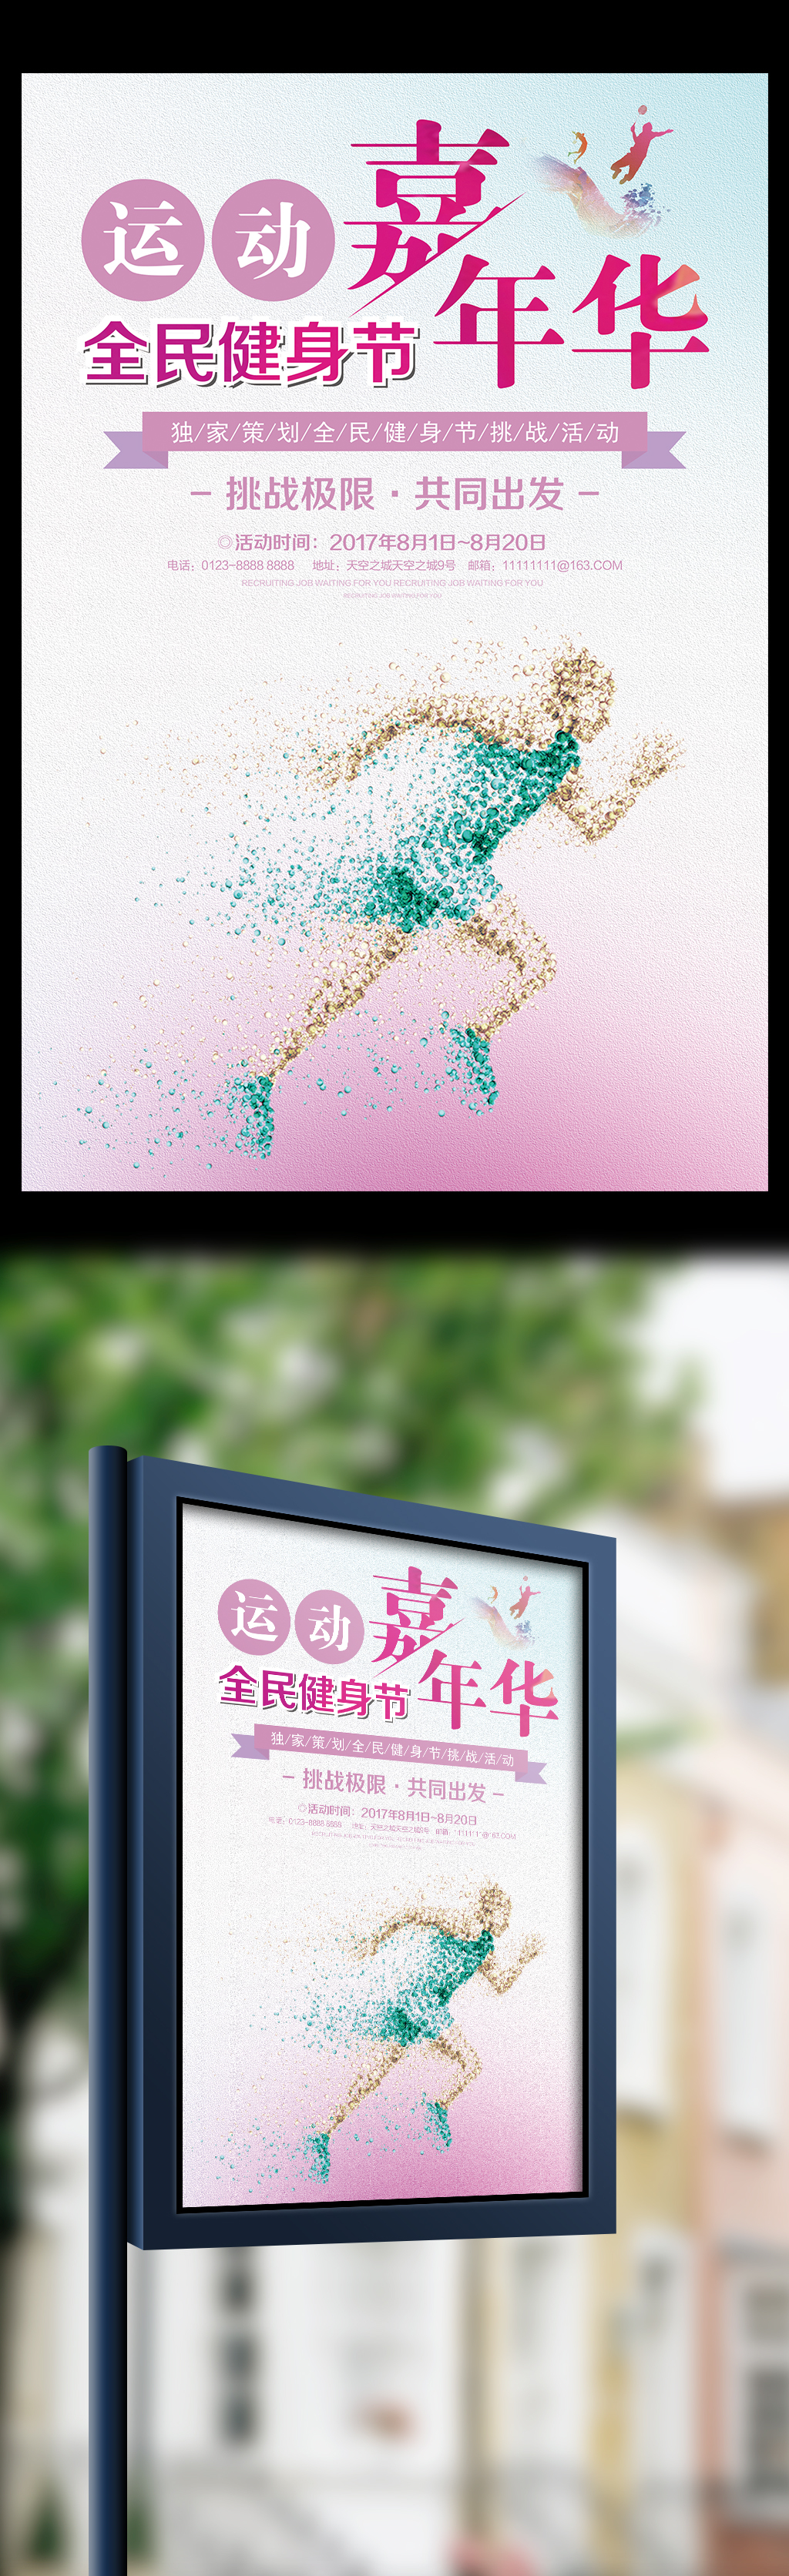 运动嘉年华全民健身节宣传海报图片